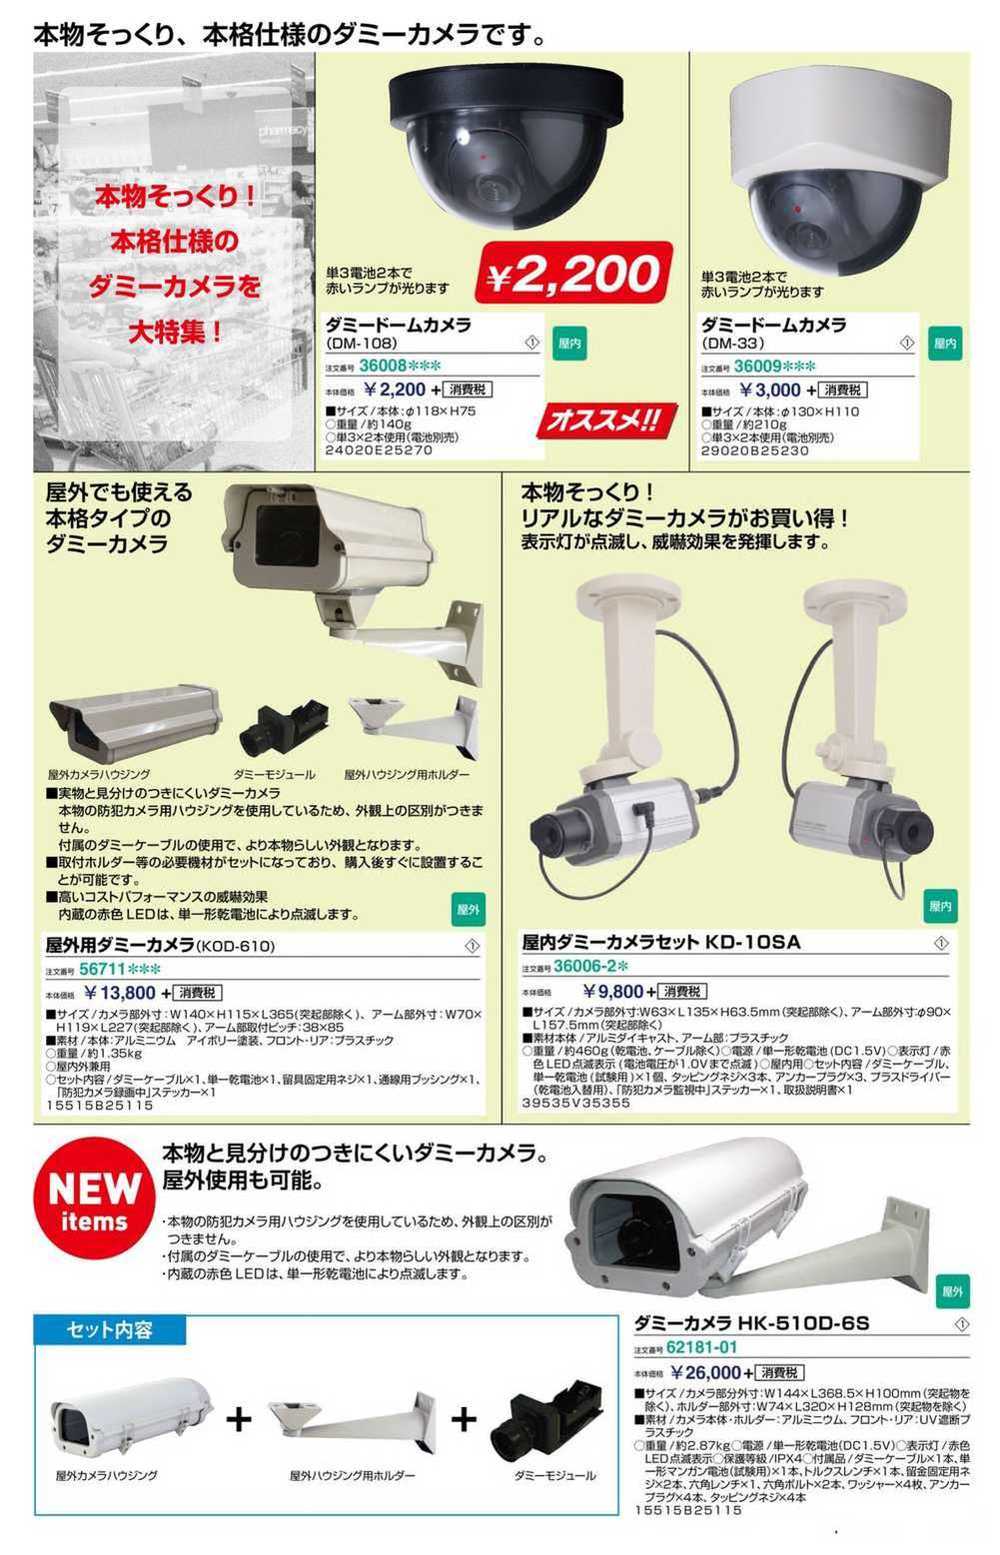 ダミーカメラ HK-510D-6S 62181-01 | 激安特価販売 看板材料.COM